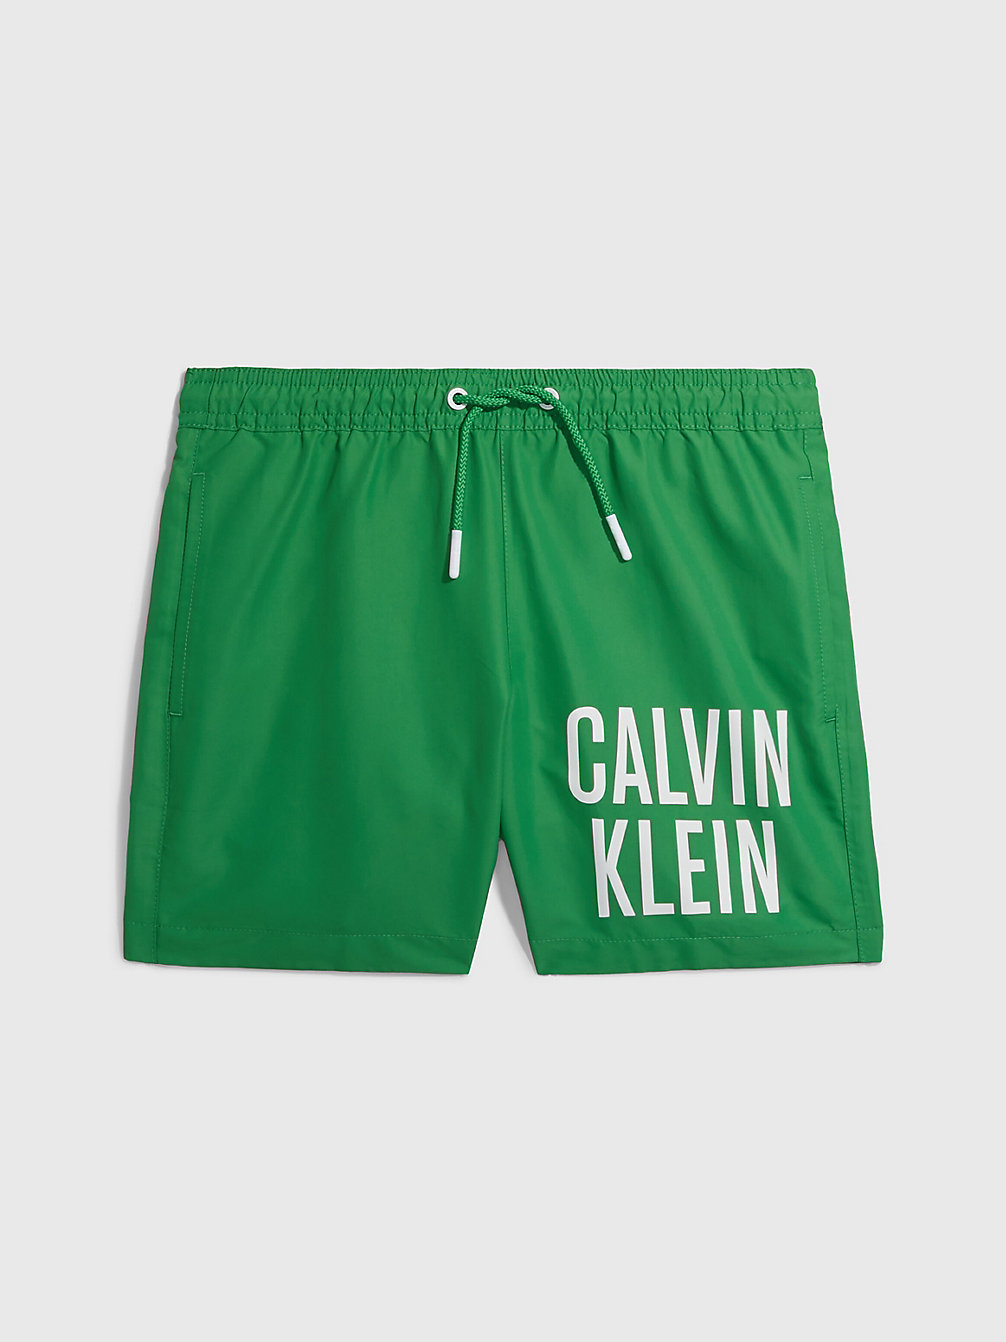 GREEN APPLE > Zwemboxer Voor Jongens - Intense Power > undefined boys - Calvin Klein